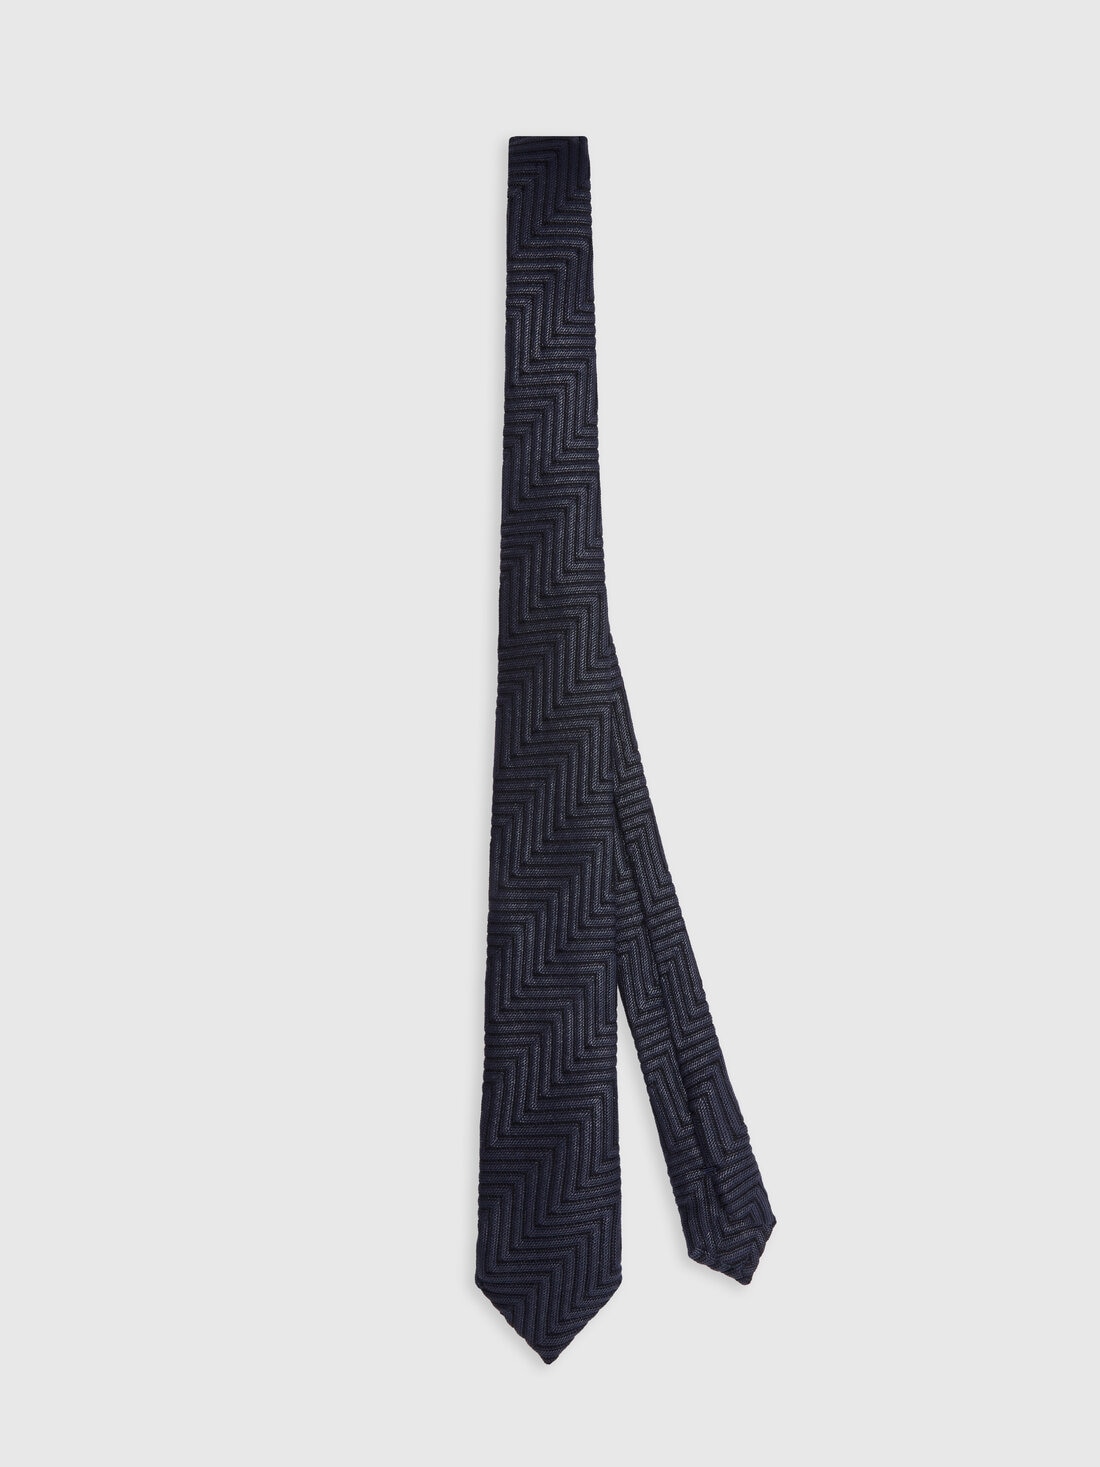 Krawatte aus Baumwolle und Viskose mit Chevronmuster, Mehrfarbig  - 8053147141824 - 0